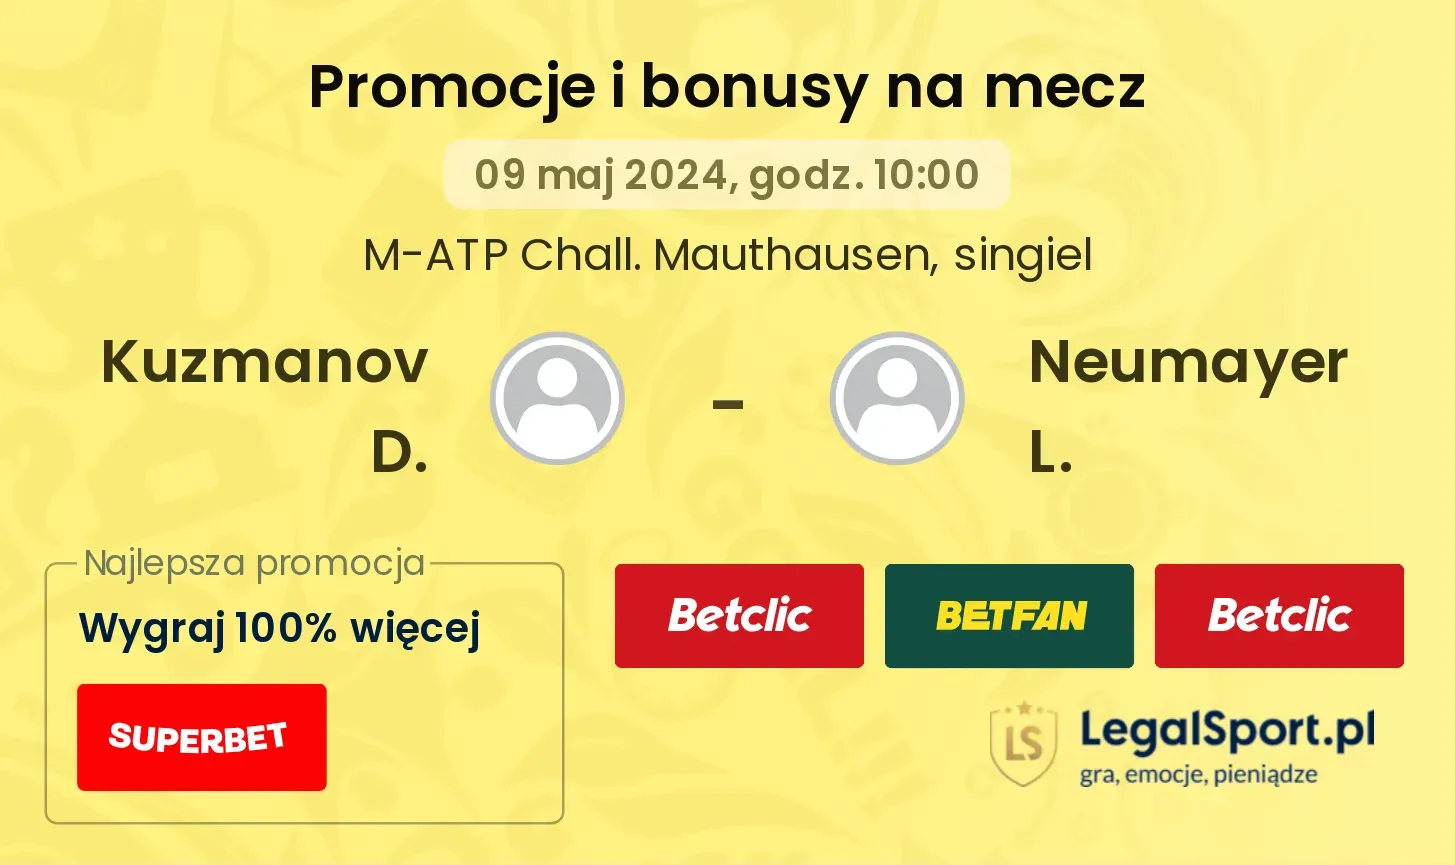 Kuzmanov D. - Neumayer L. promocje bonusy na mecz